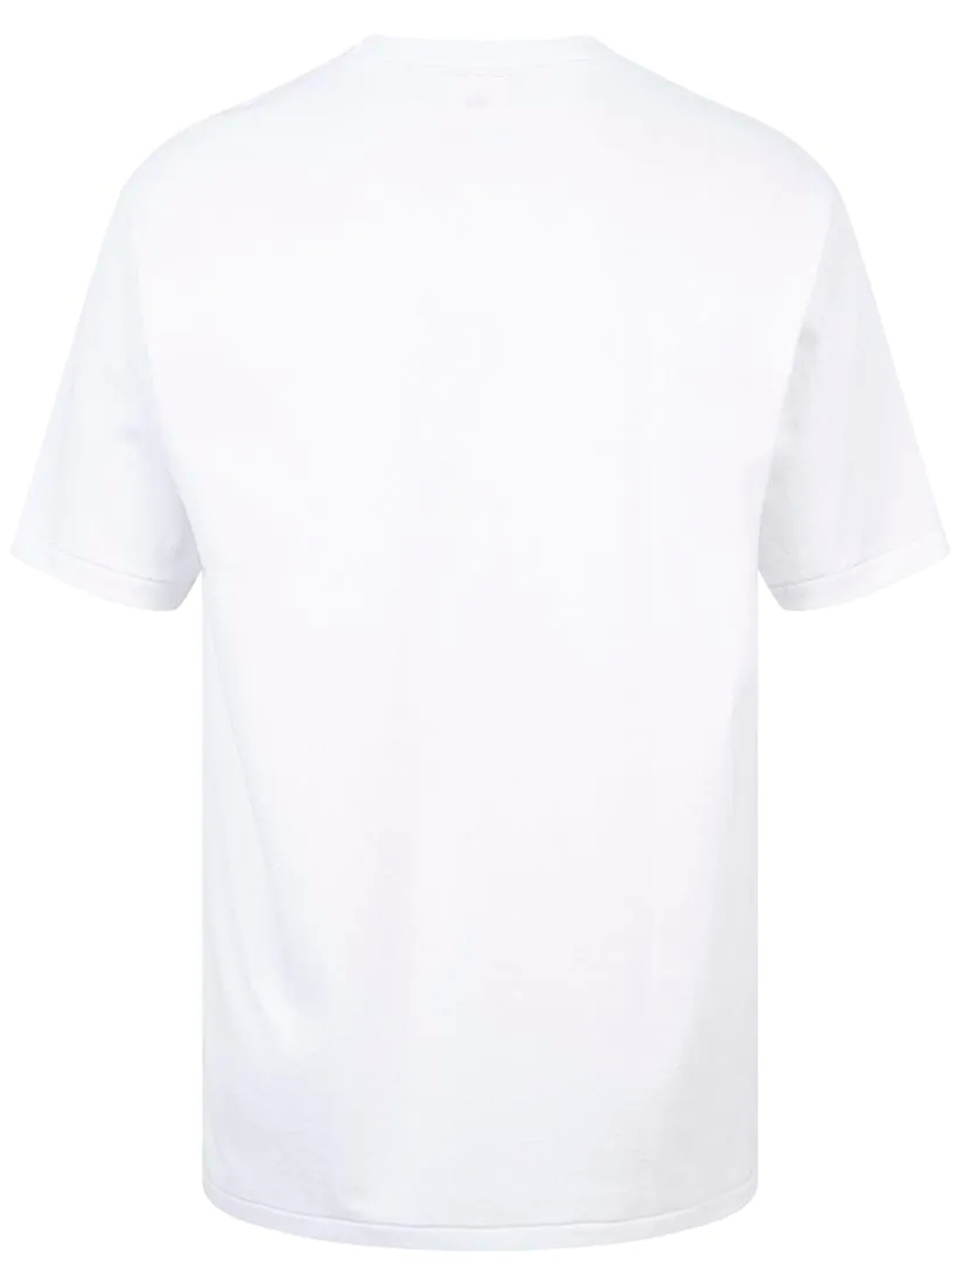 Imagem de: Camiseta BAPE Branca com Logo Central Grande